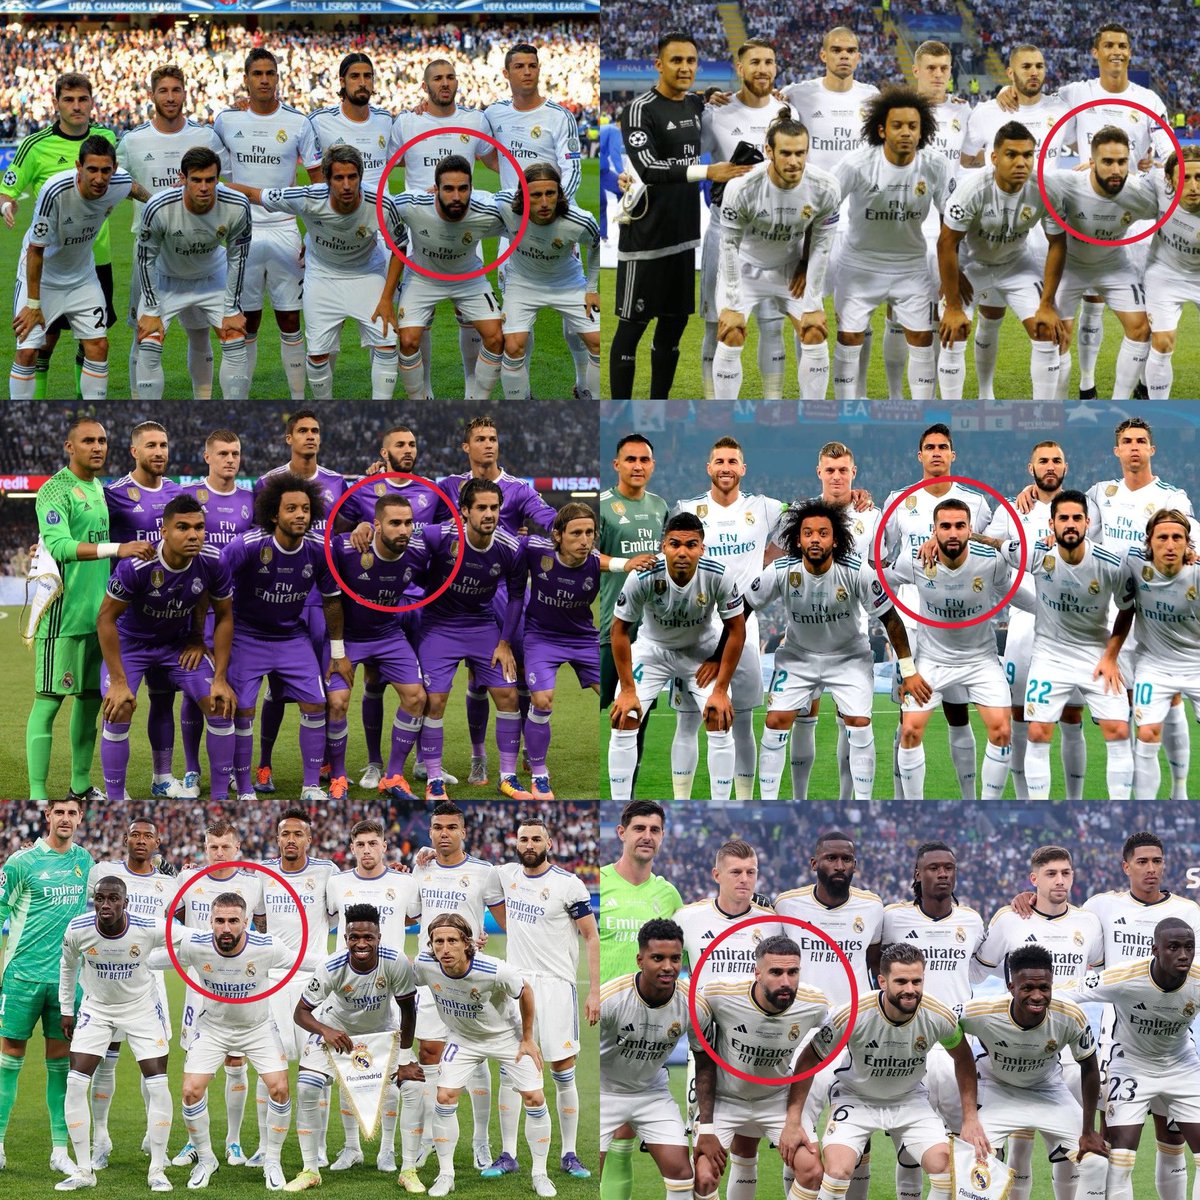 6 finales del Real Madrid en los últimos 10 años. Solo un futbolista fue titular en todas ellas. Y es de la Fábrica. El gran Dani Carvajal.